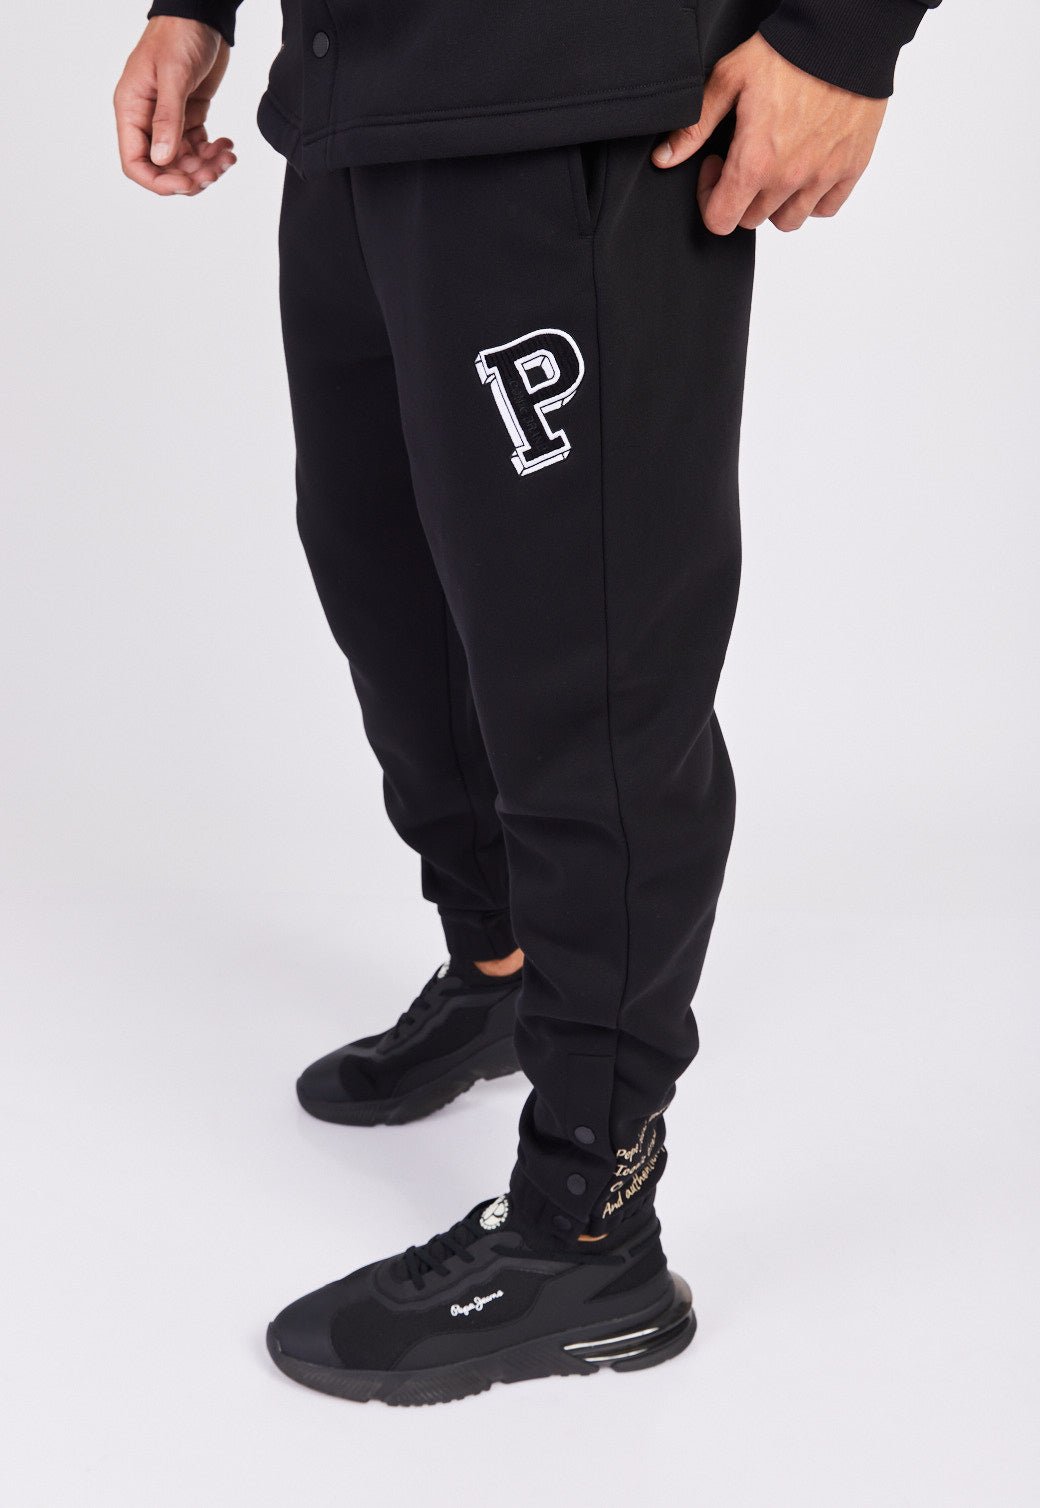 חליפת פוטר P שני חלקים לגברים - Pepe Jeans